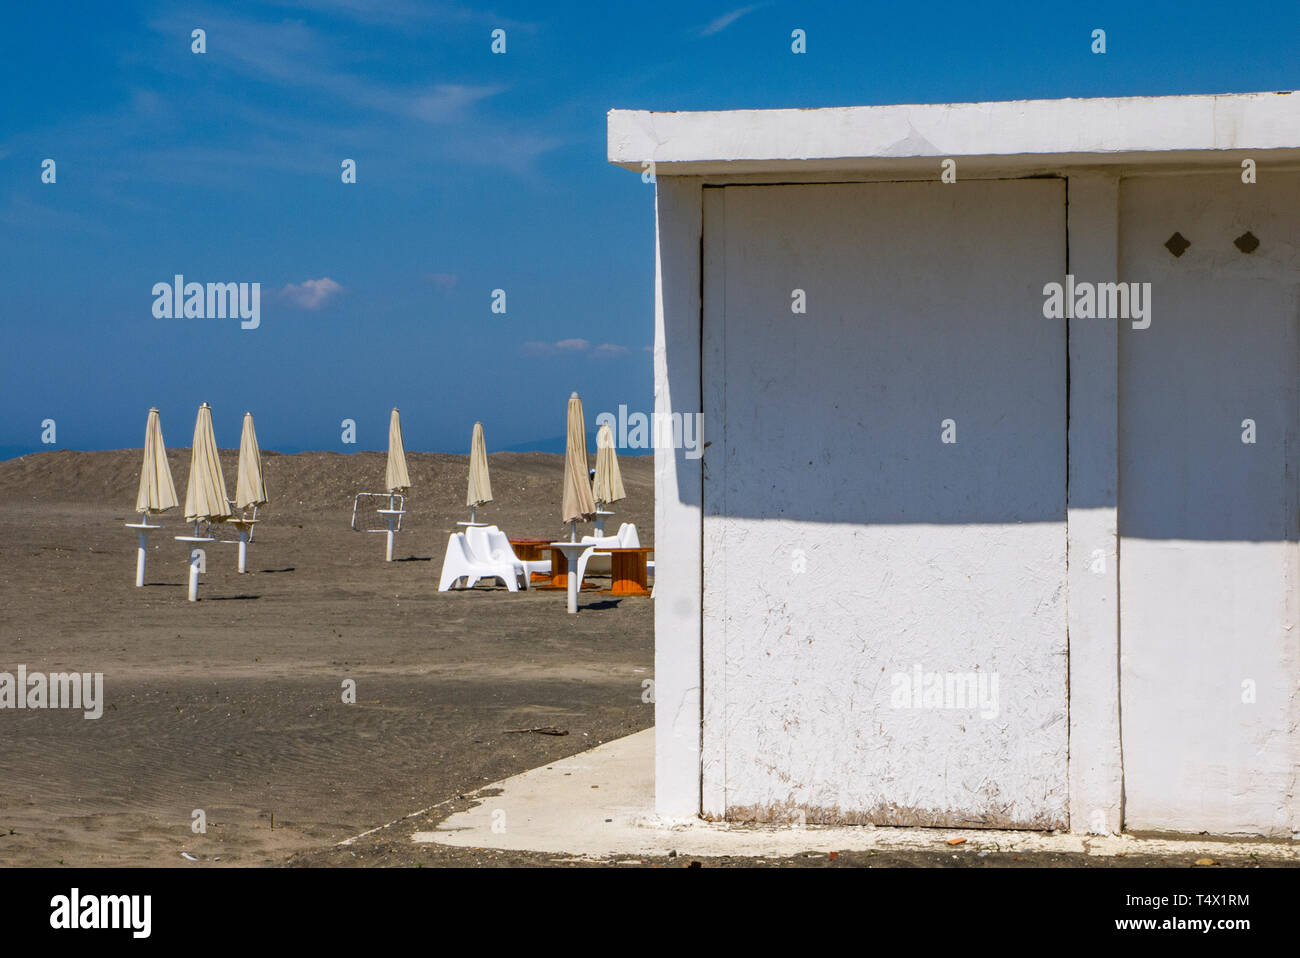 Bianco cabina balneare e ombrelloni bianchi su una spiaggia deserta, nel mese di aprile con il blu del cielo in background Foto Stock